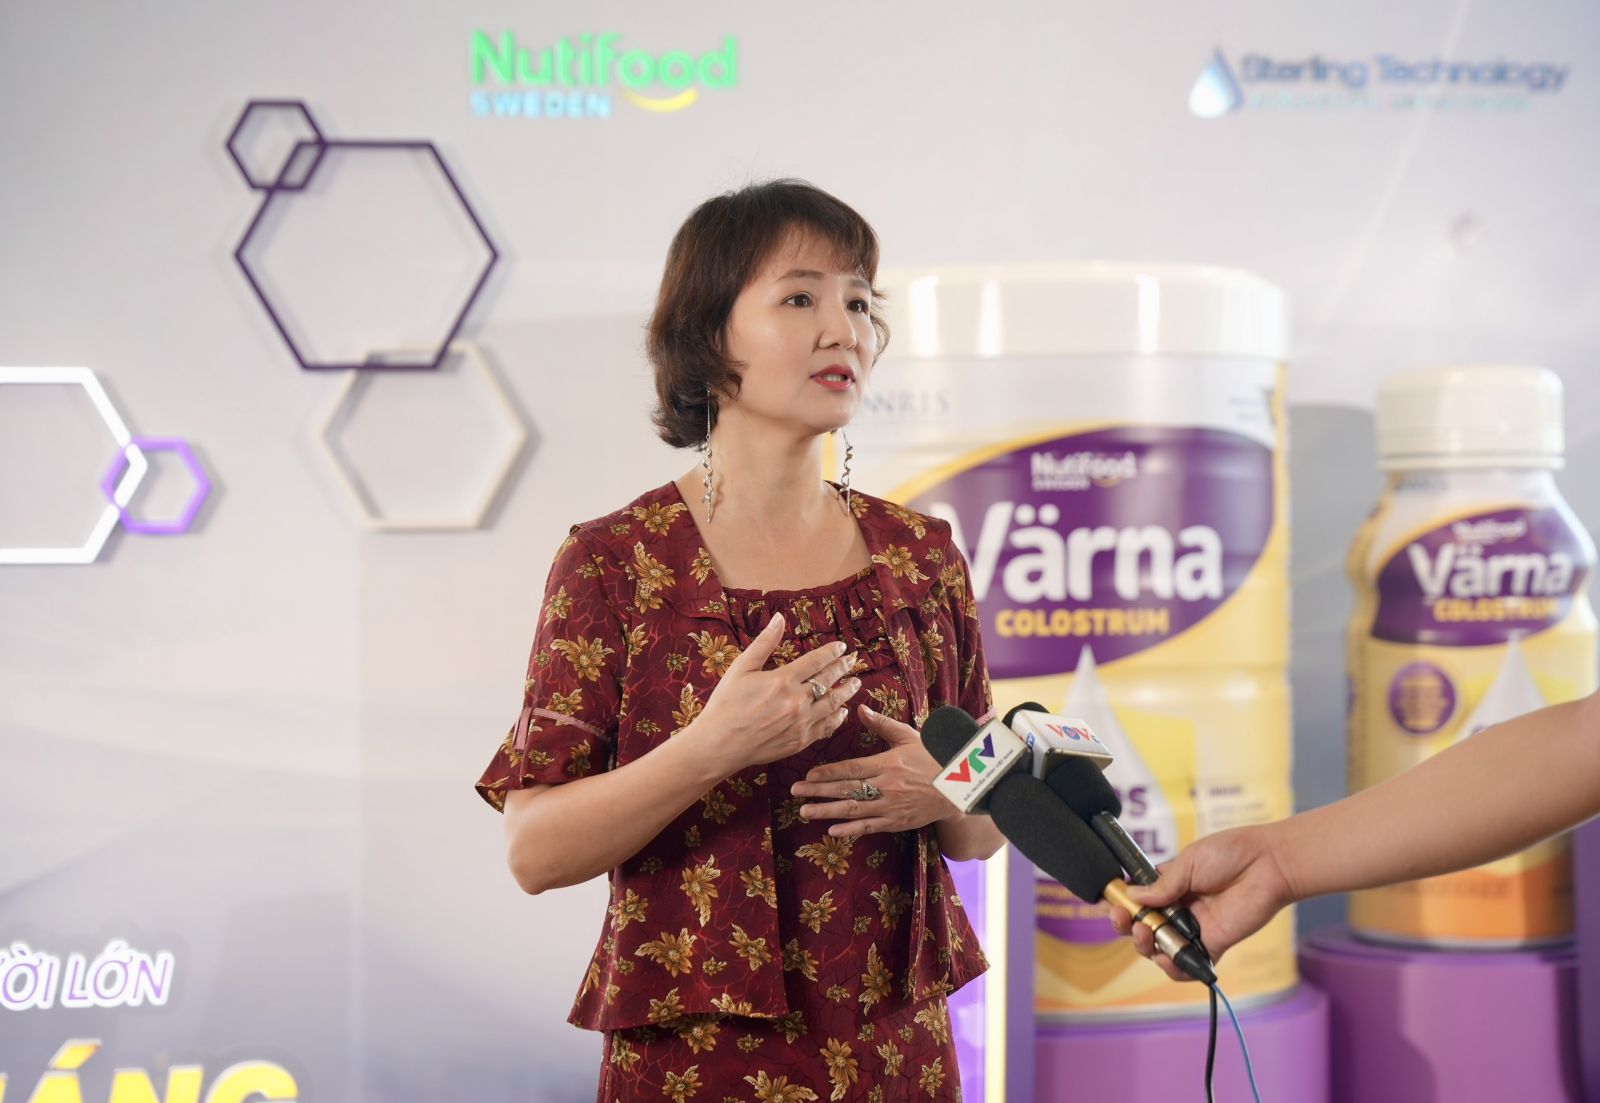 Nutifood Thụy Điển công bố ra mắt sản phẩm mới Värna Colostrum dành cho người Việt